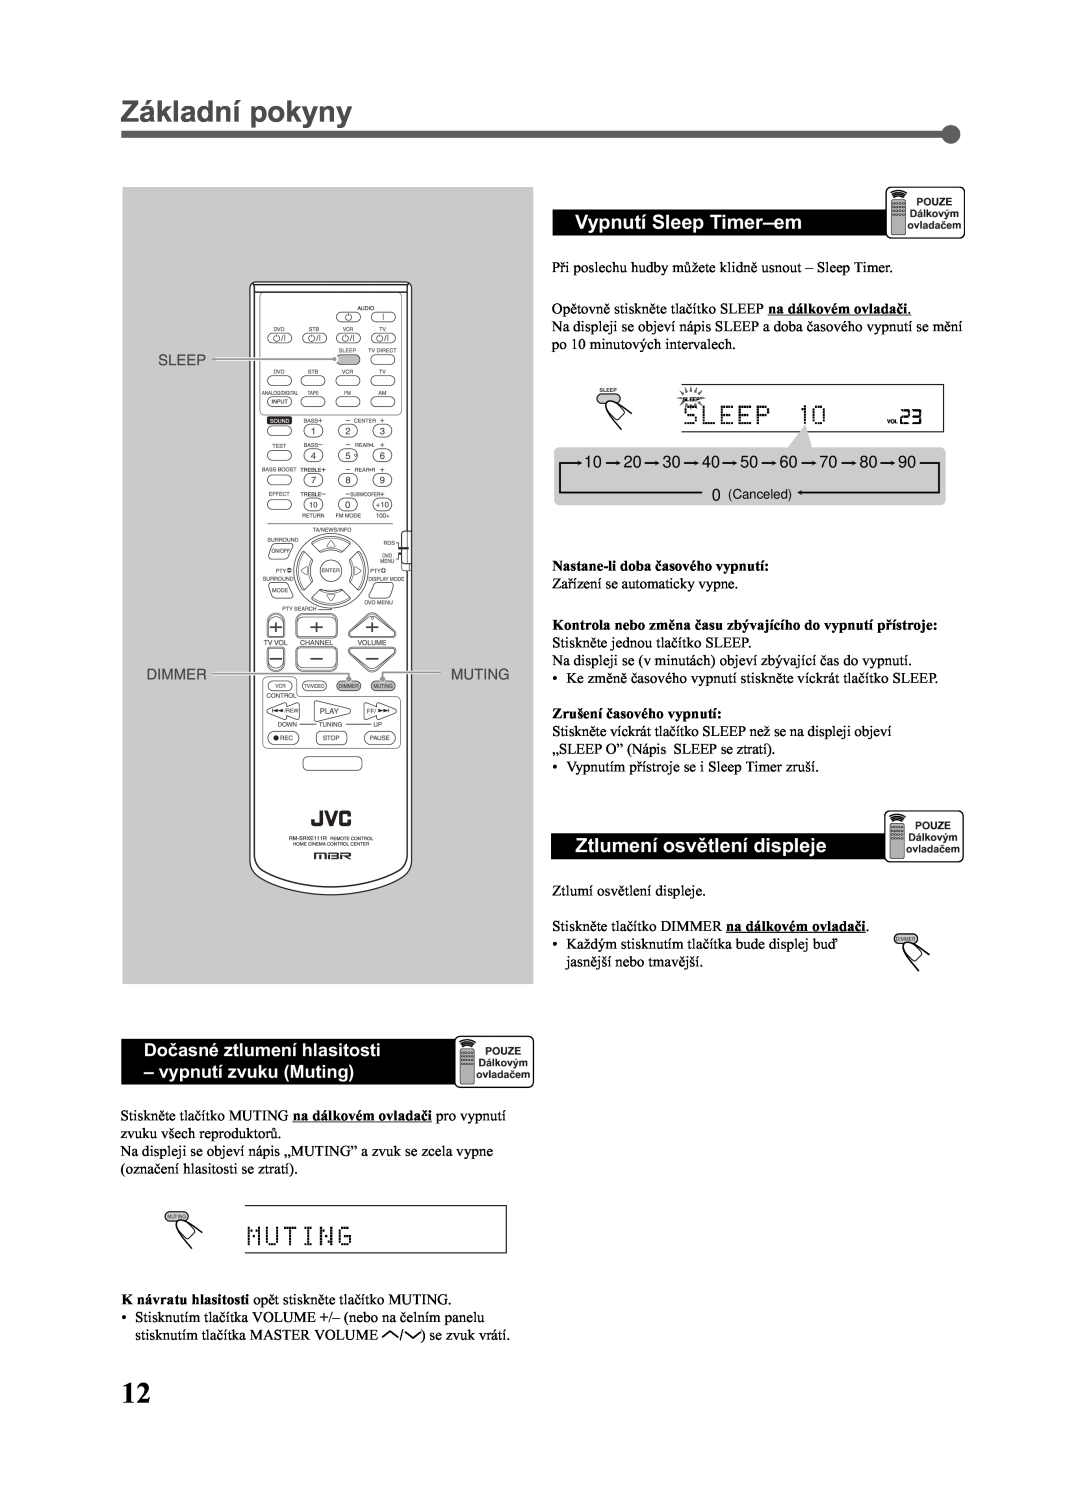 JVC RX-E111RSL manual Základní pokyny, Vypnutí Sleep Timer-em, Ztlumení osvìtlení displeje, Doèasné ztlumení hlasitosti 